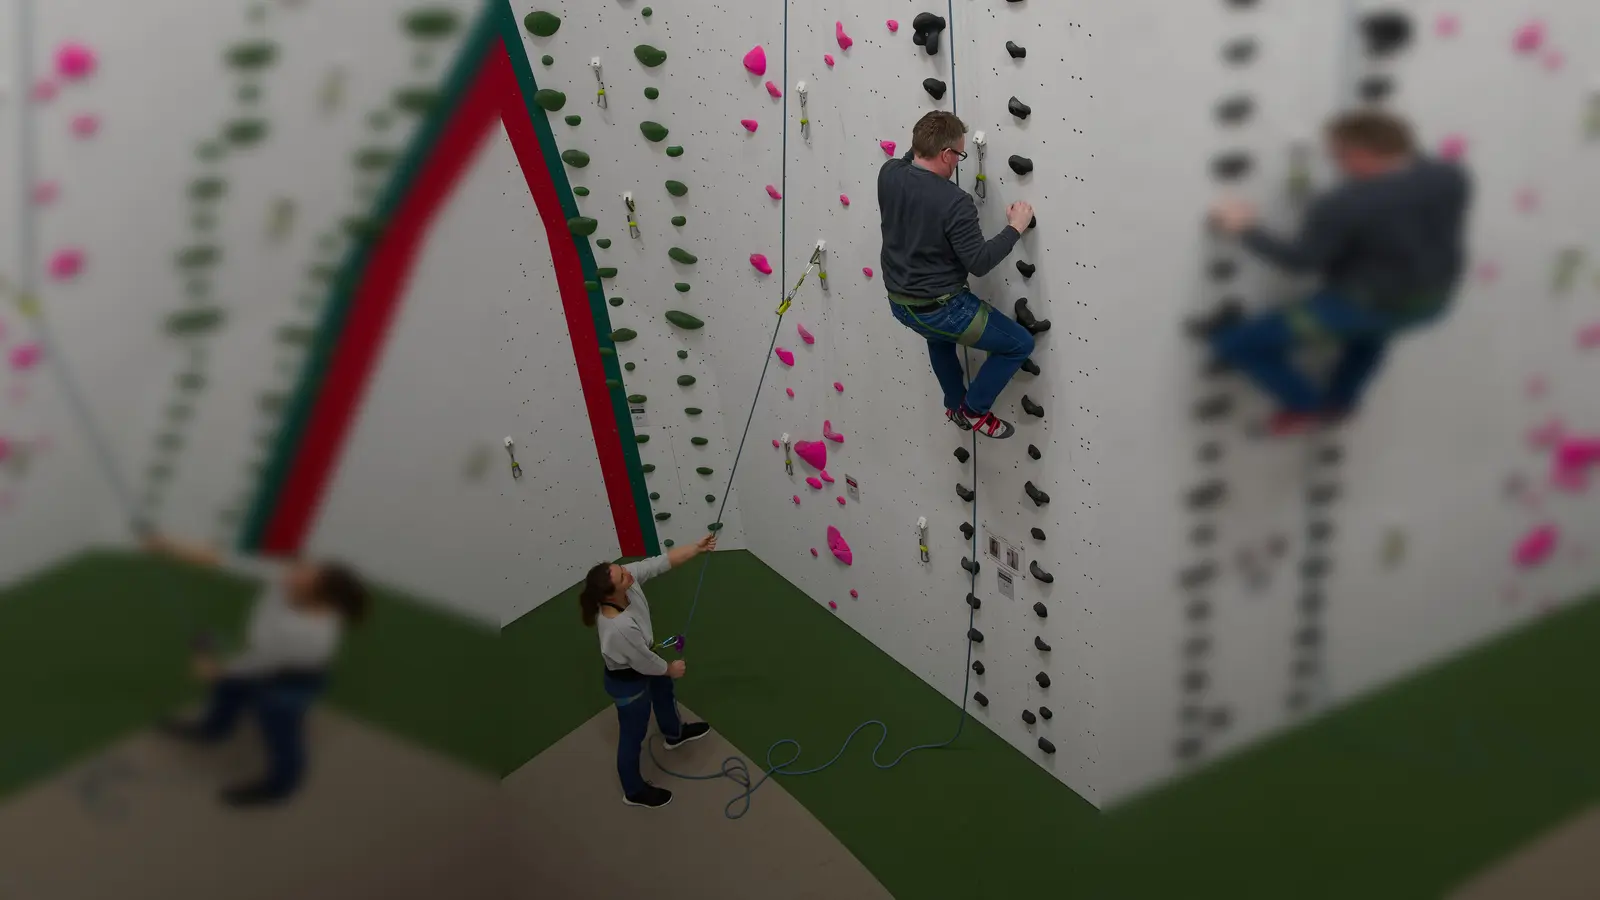 Menschen mit Handicap erhalten die Möglichkeit, mit Hilfe speziell ausgebildeter Trainer zu klettern. (Foto: PFIFF Dachau)